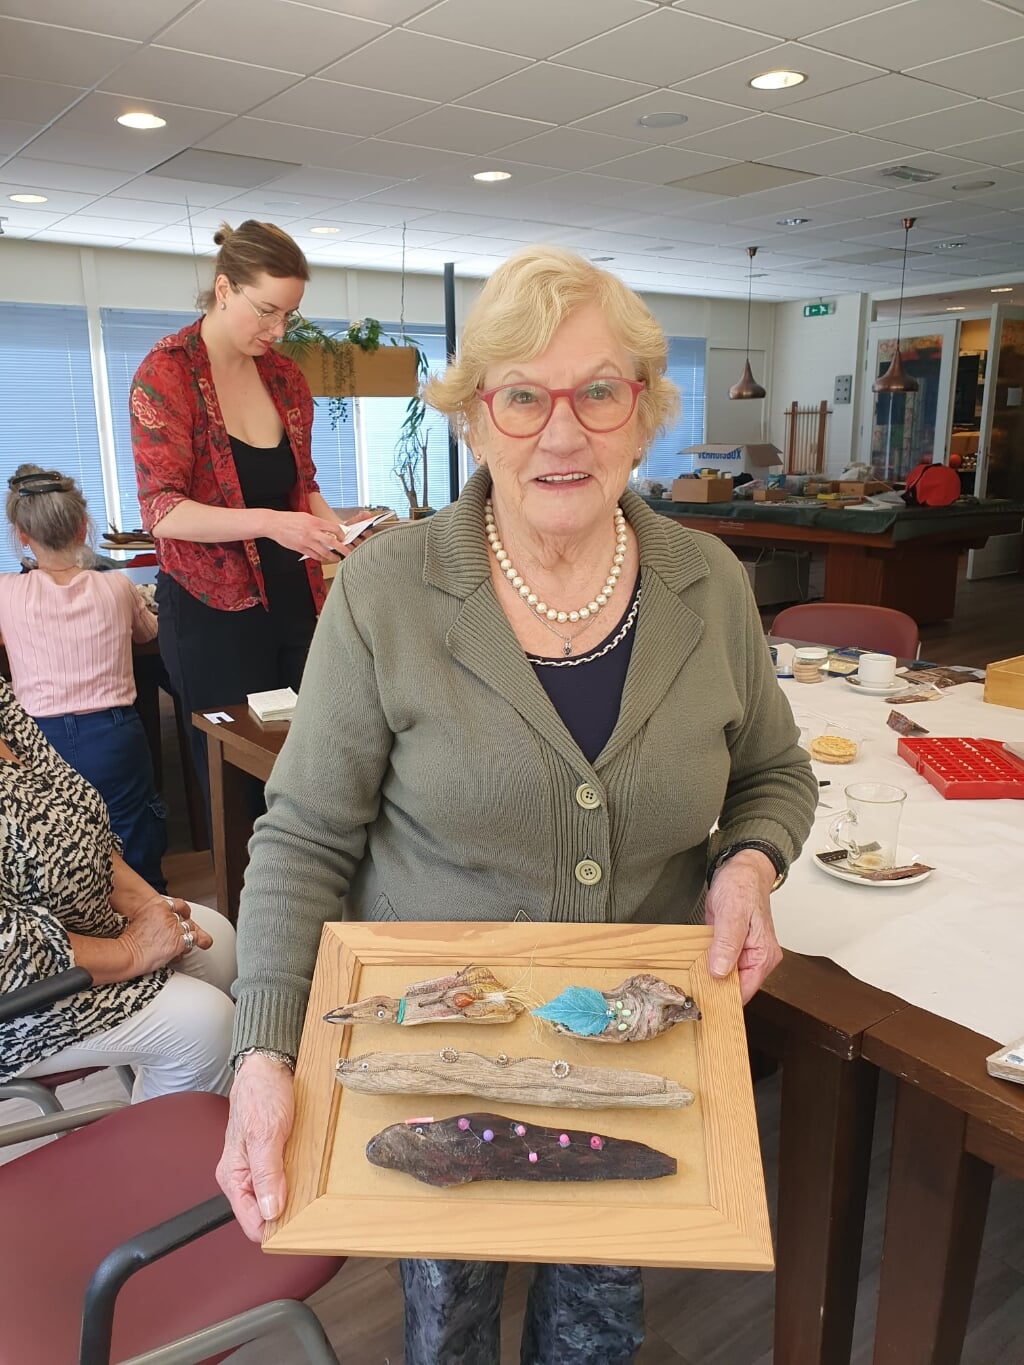 De 87-jarige Lucy toont haar kunstwerkjes van hout.